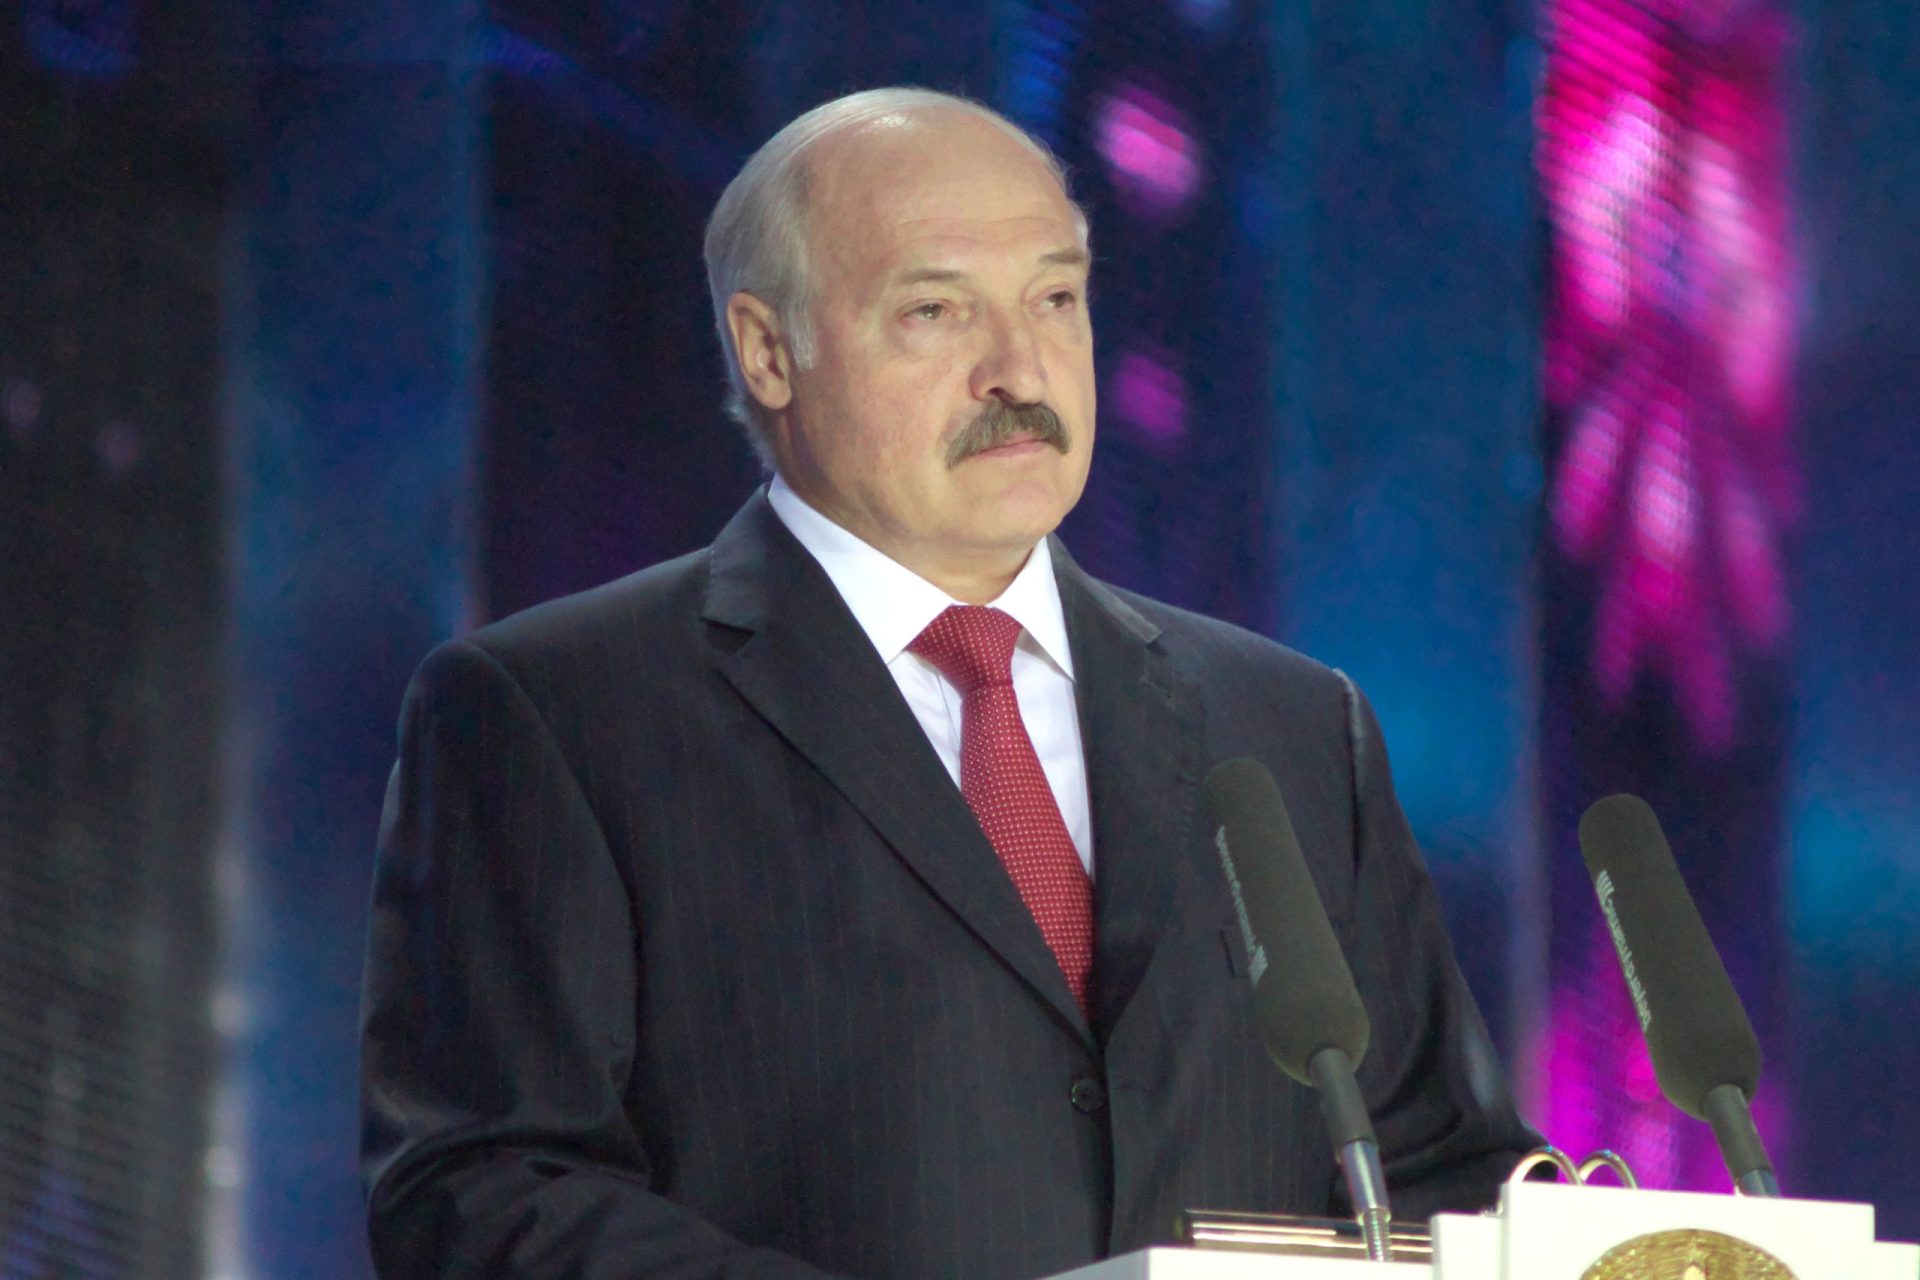 Bielorrússia recebeu “mais de metade” das armas nucleares russas